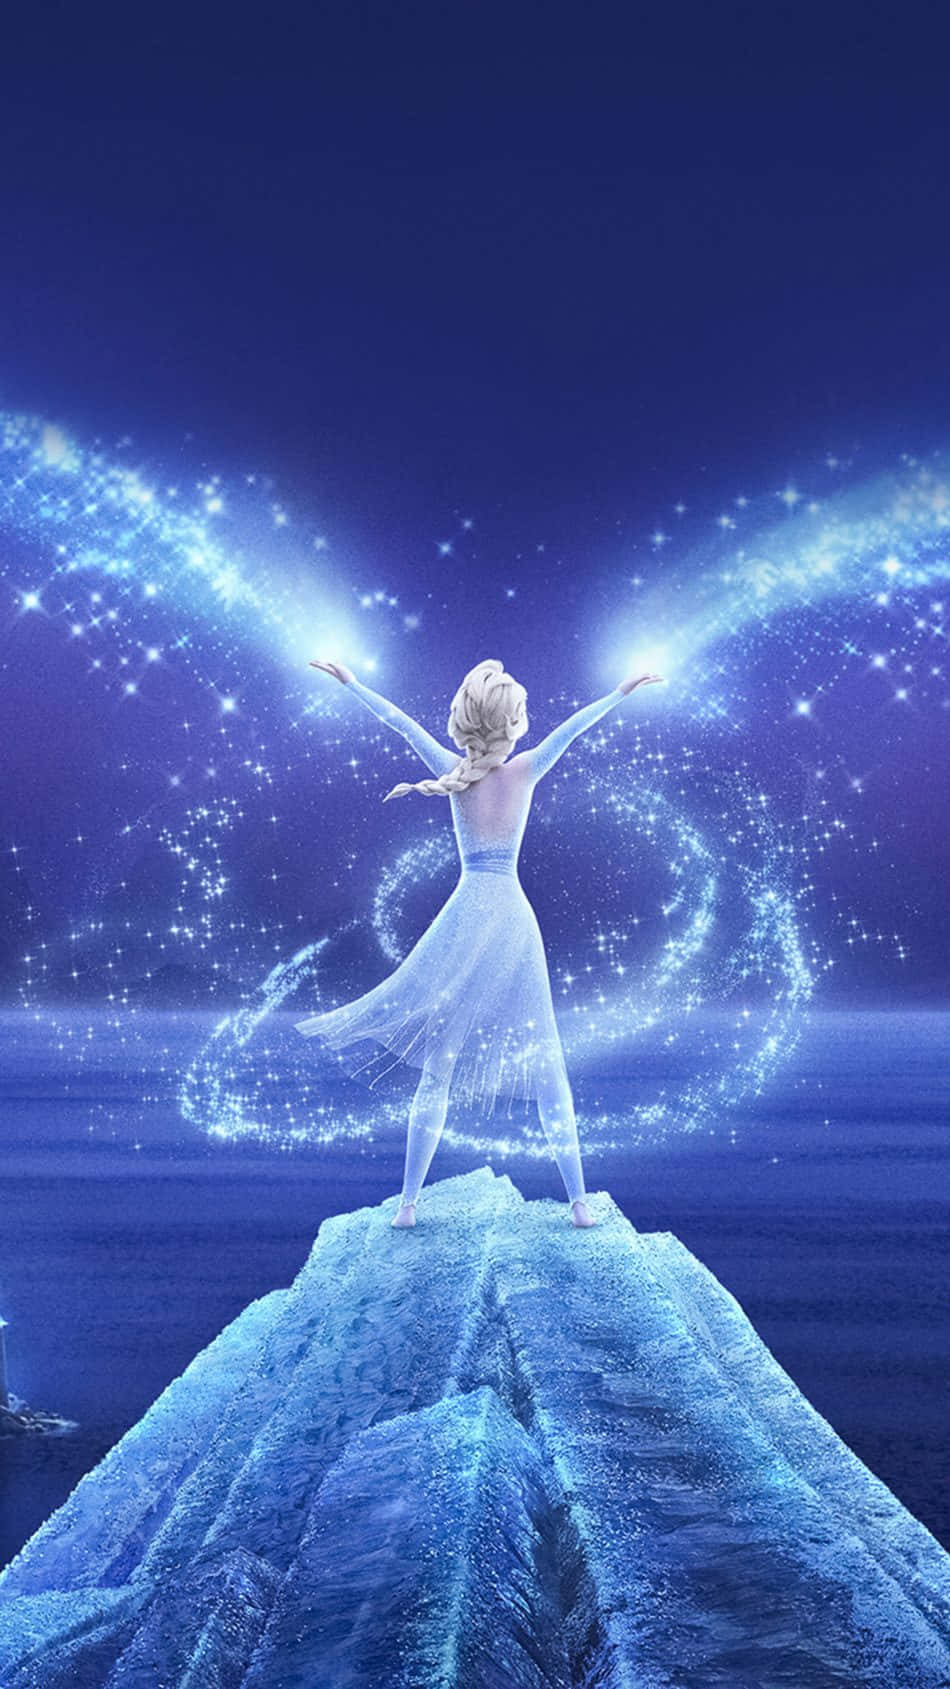 Unasilhouette Di Elsa, Amata Protagonista Della Serie Di Film Frozen.